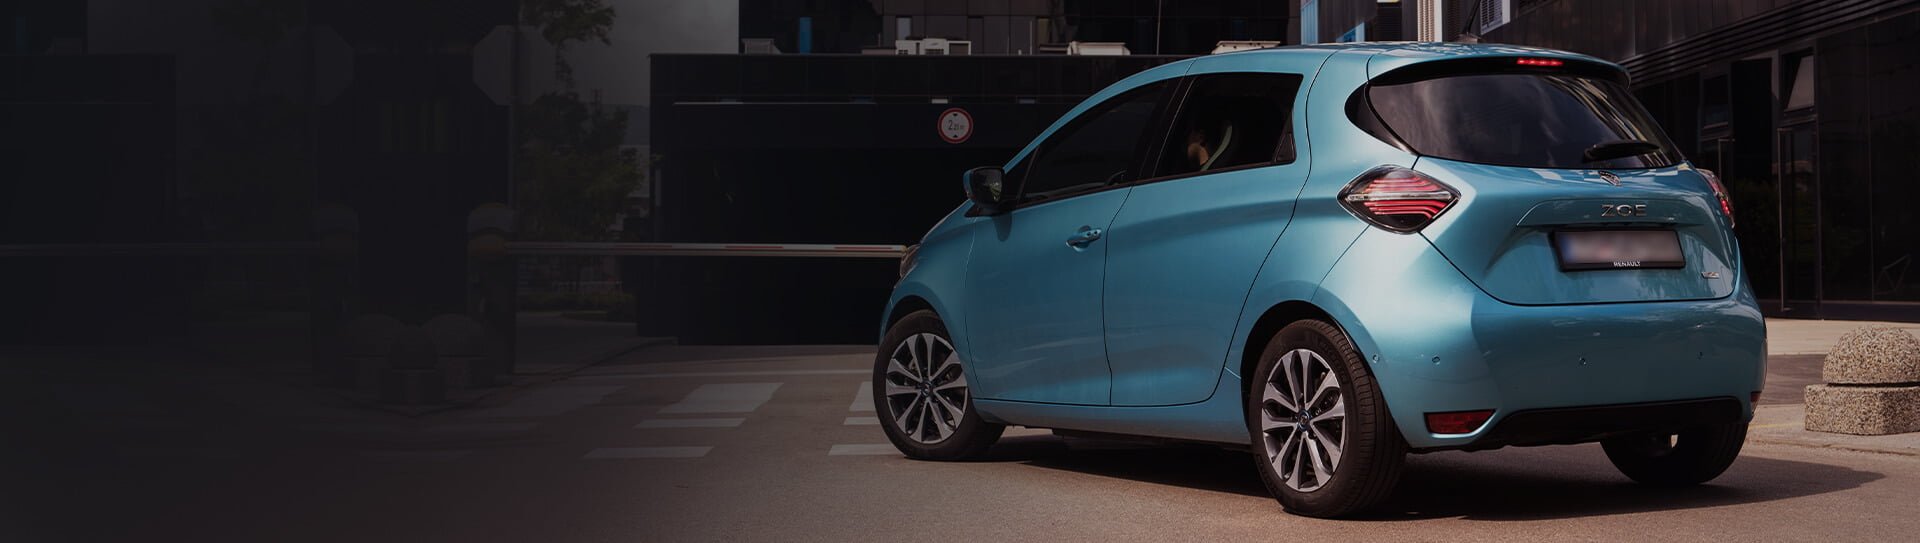 Renault – leasing samochodu elektrycznego